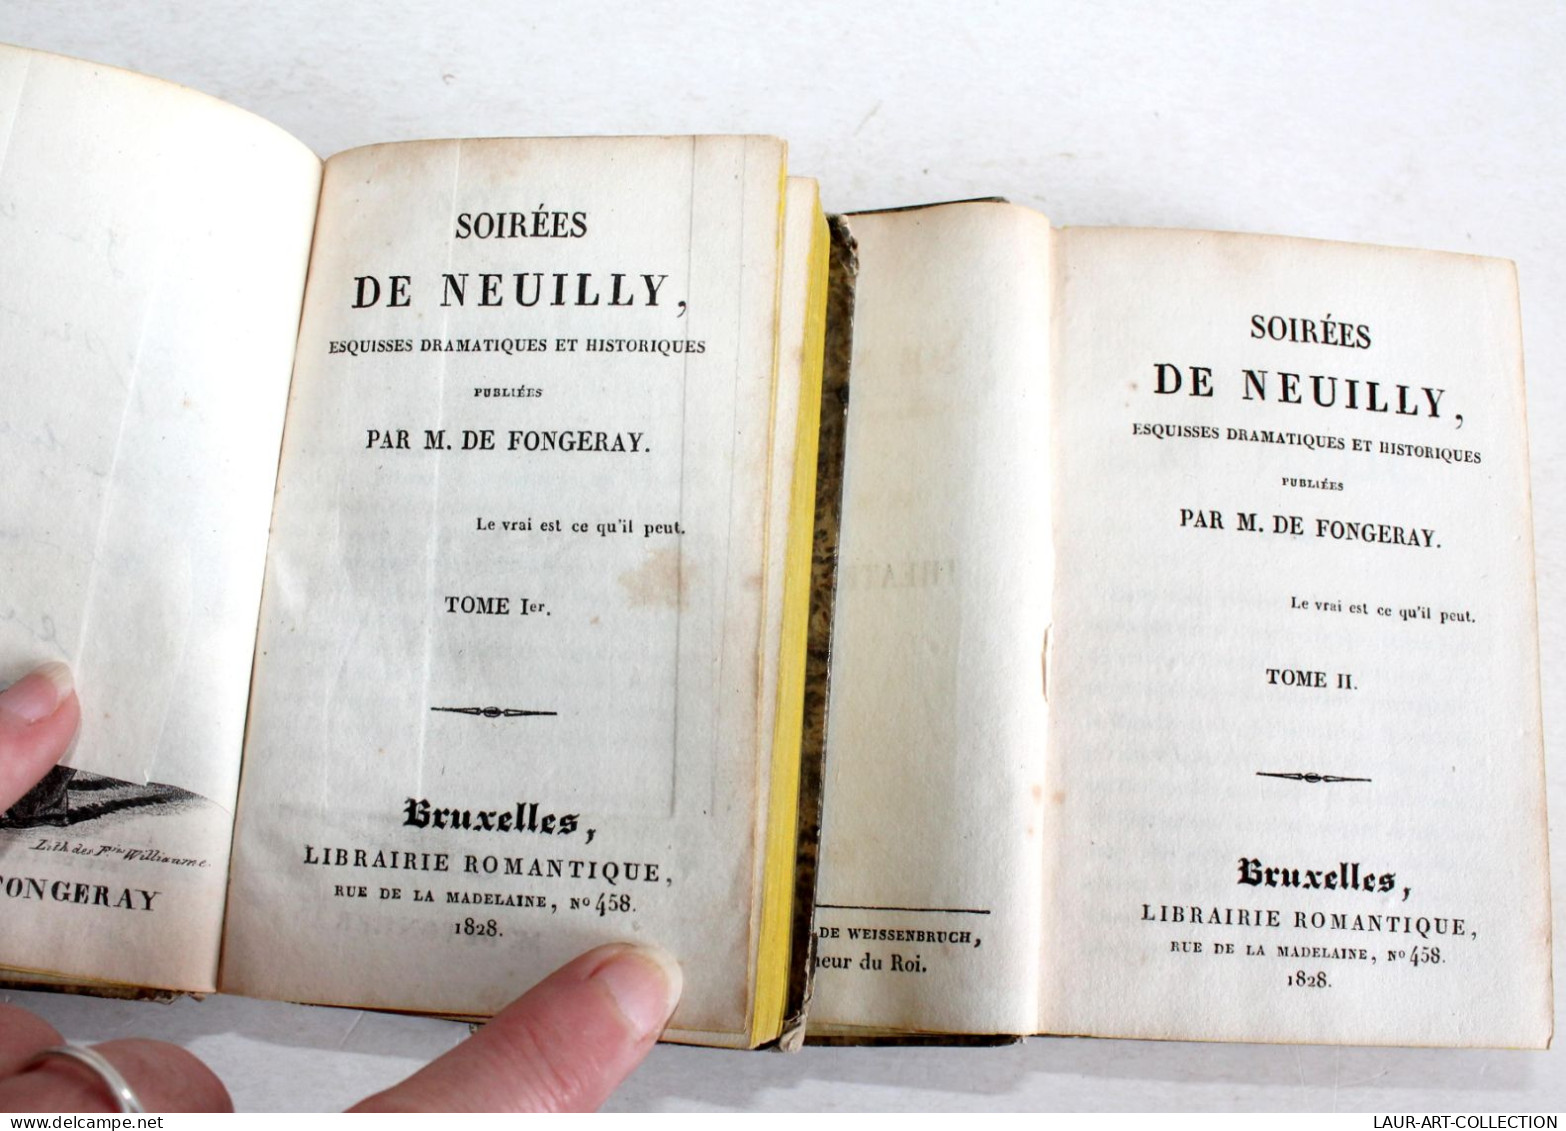 RARE EO + ENVOI D'AUTEUR SOIREES DE NEUILLY ESQUISSE DRAMATIQUE DE FONGERAY 1828 / ANCIEN LIVRE XIXe SIECLE (1803.259 - Libros Autografiados